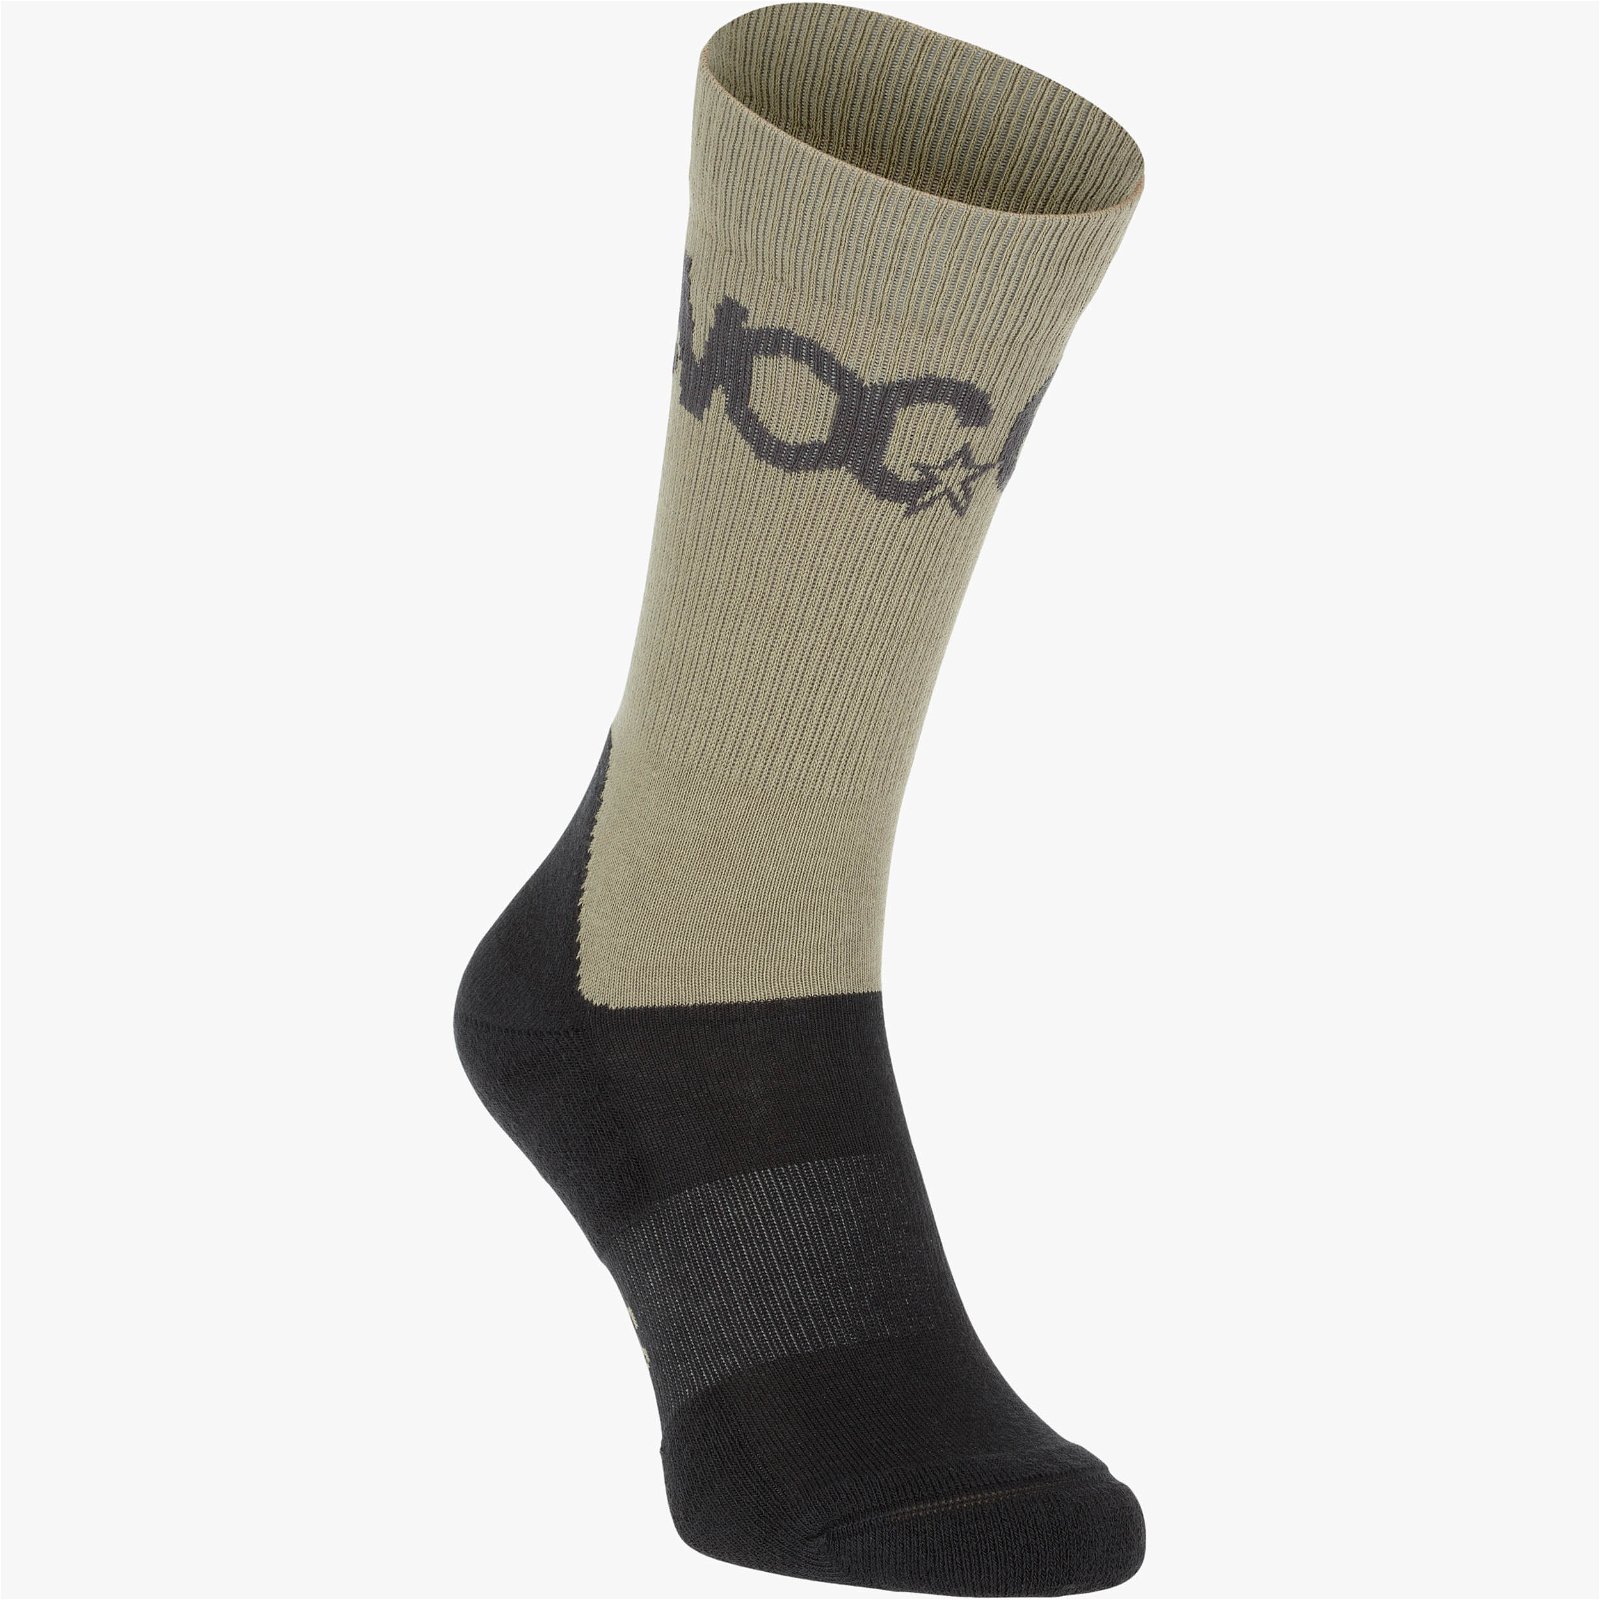 EVOC Socks Medium